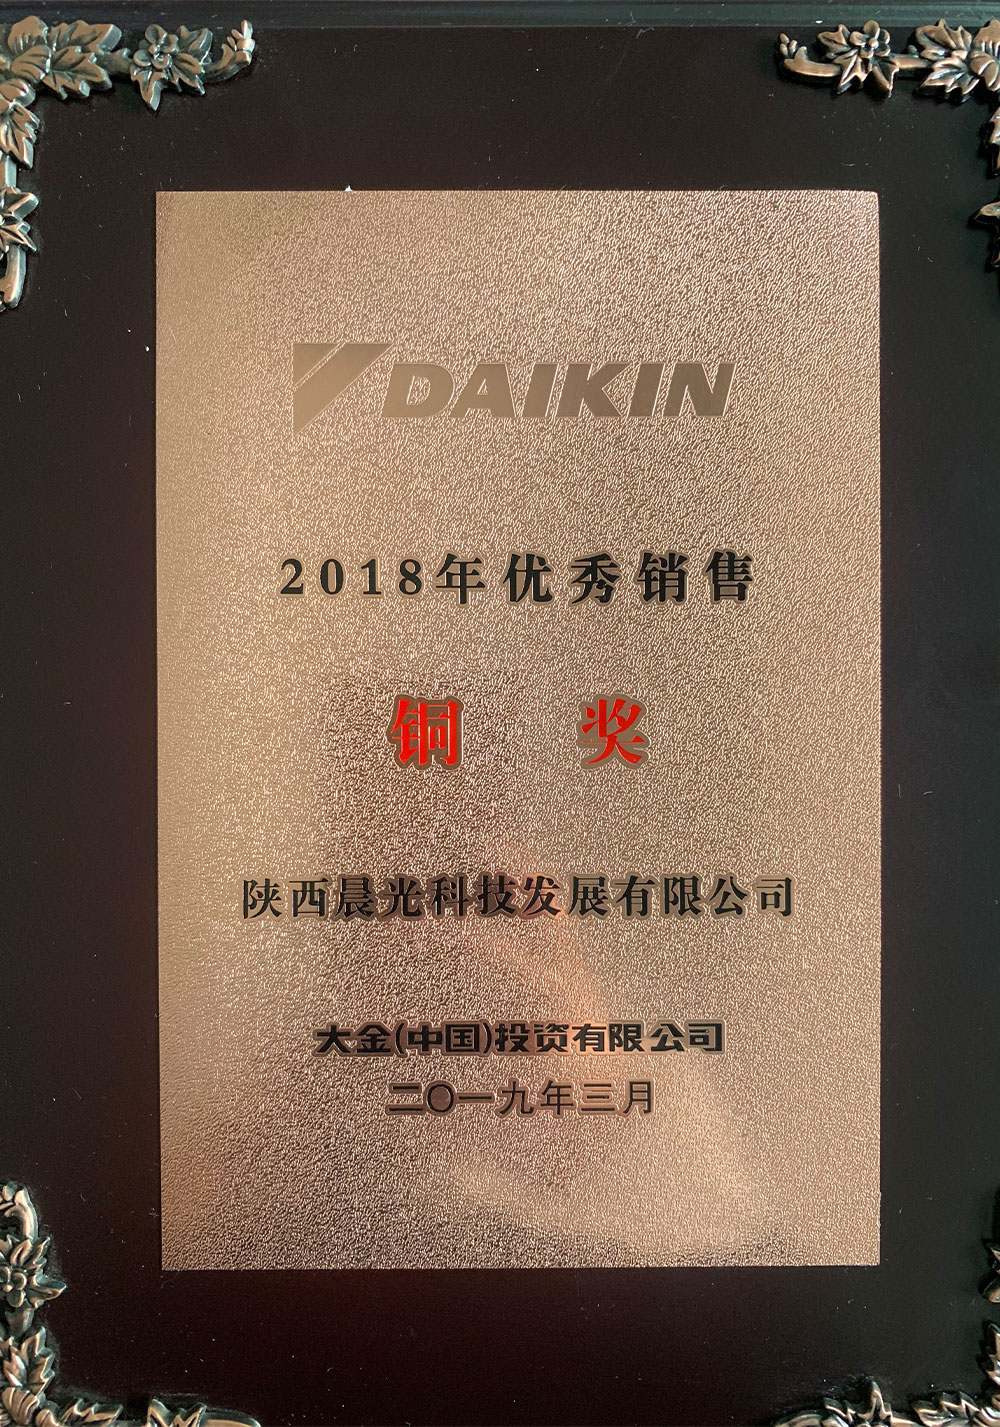 Daikin Bronze Award